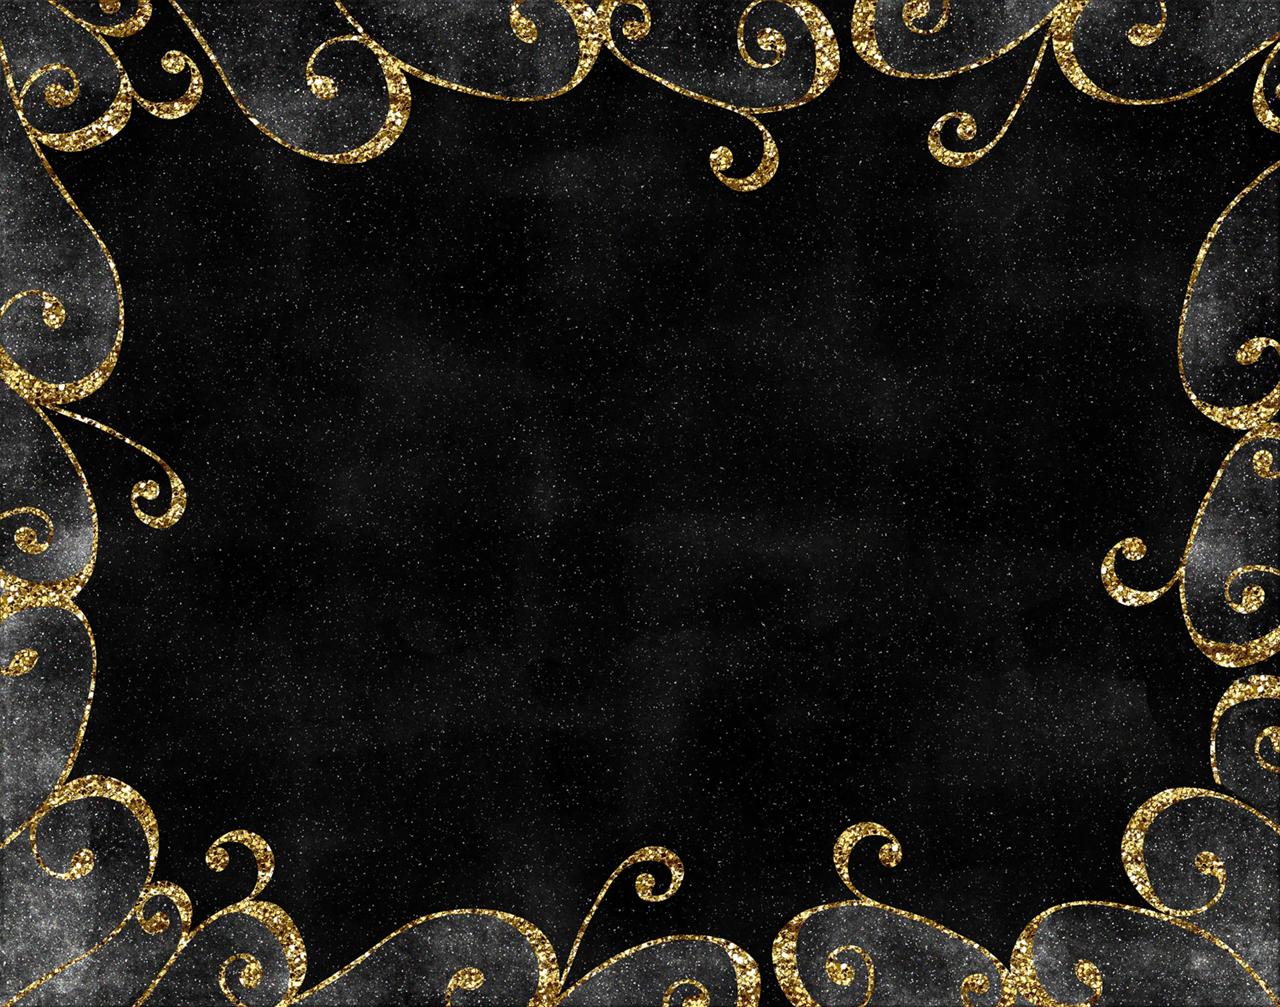 Nền đen và vàng là một trong những màu sắc huyền bí mà ai cũng thích nhỉ? Thật may mắn khi bạn có thể tải xuống miễn phí nền đen và vàng nền 17 trang trí cho thiết kế của mình. Cùng chiêm ngưỡng nhé!